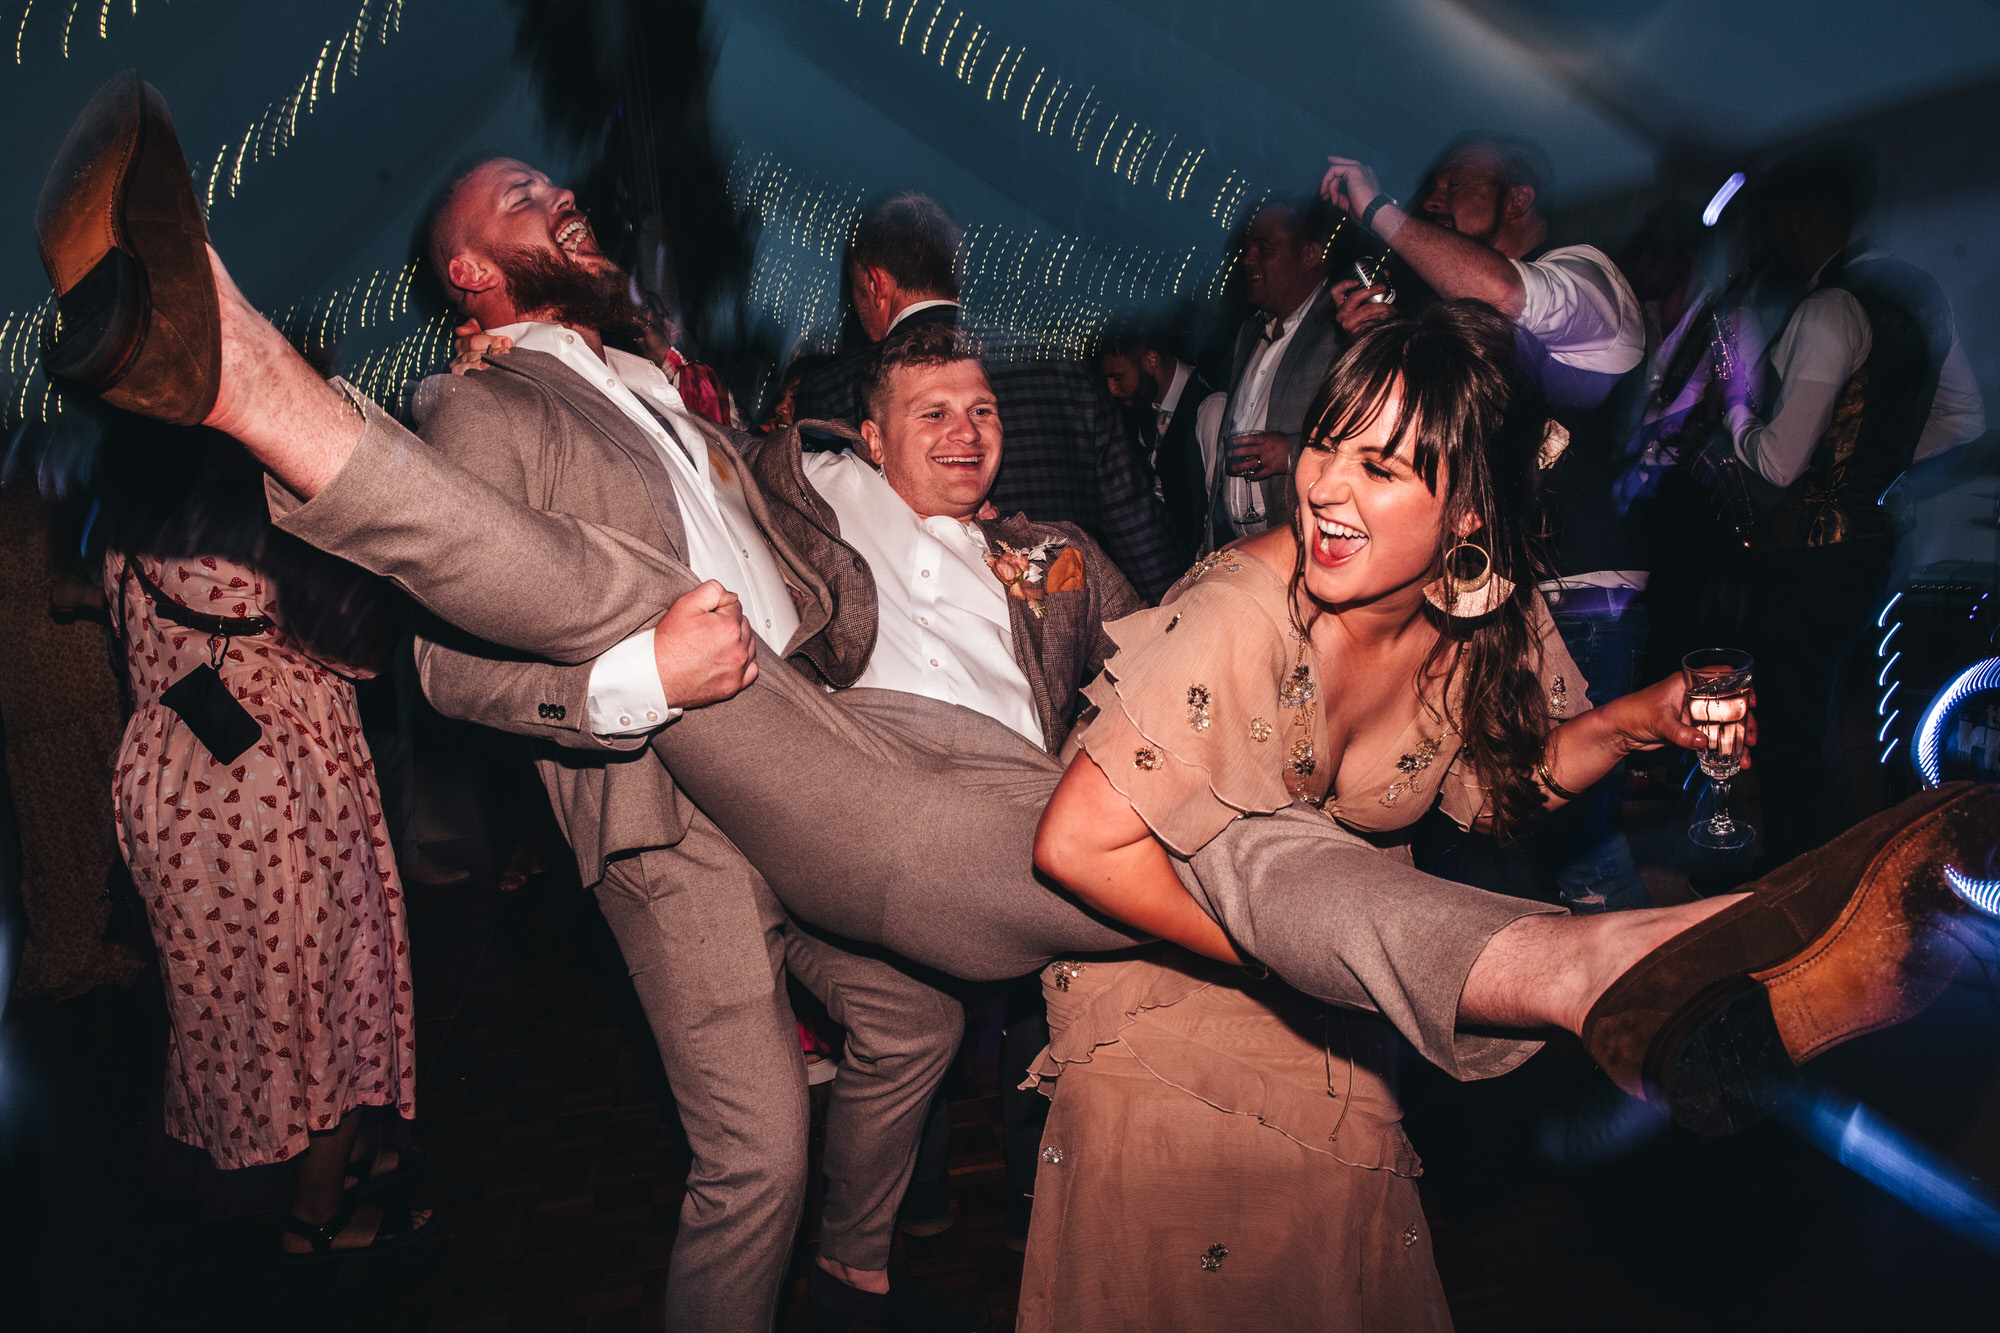 two people hold up groom on dancefloor